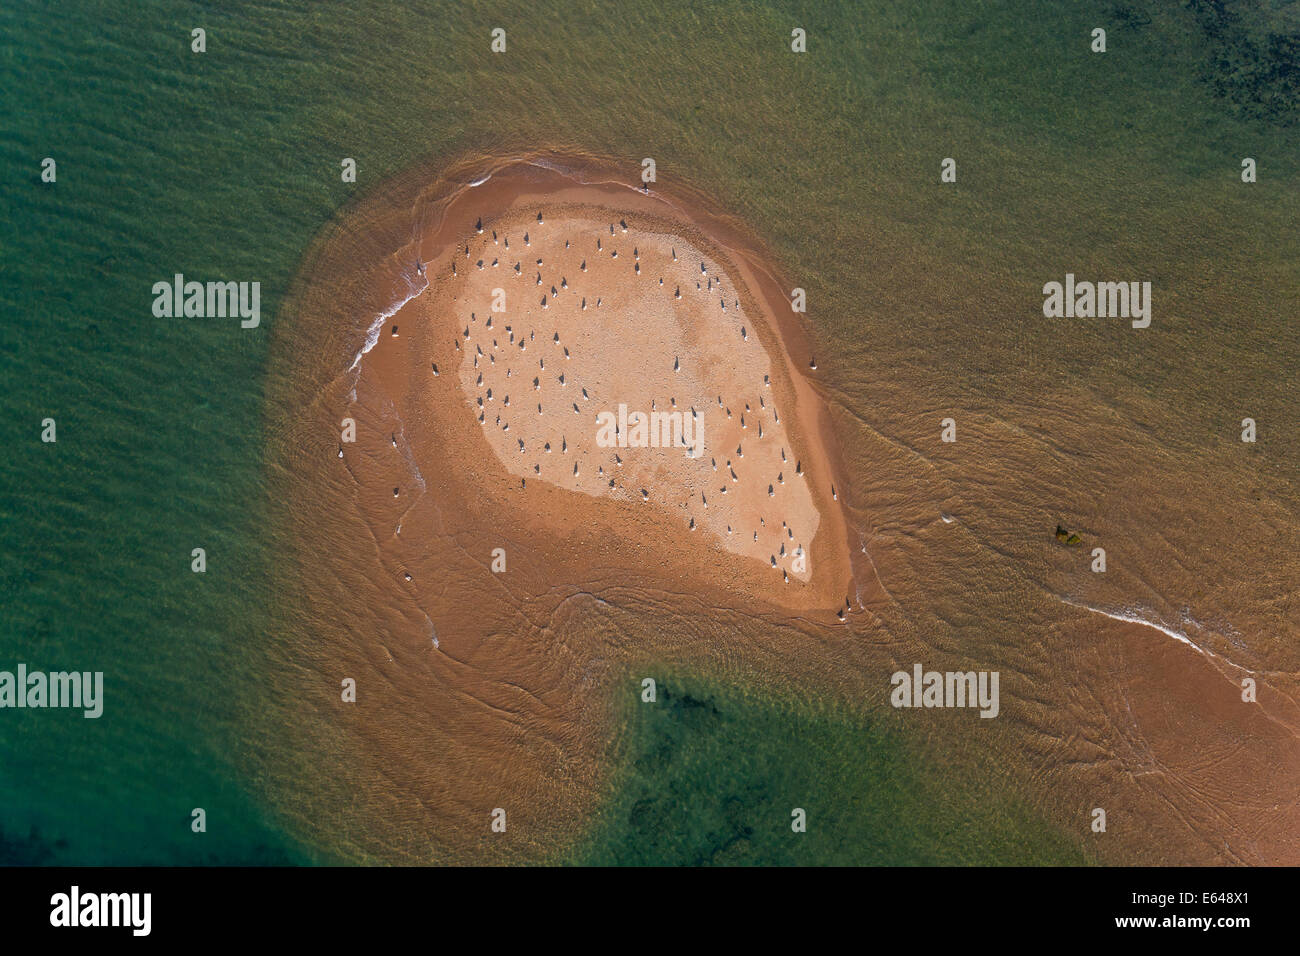 Vue aérienne d'oiseaux sur l'île de sable de la province de Huelva, Espagne Banque D'Images